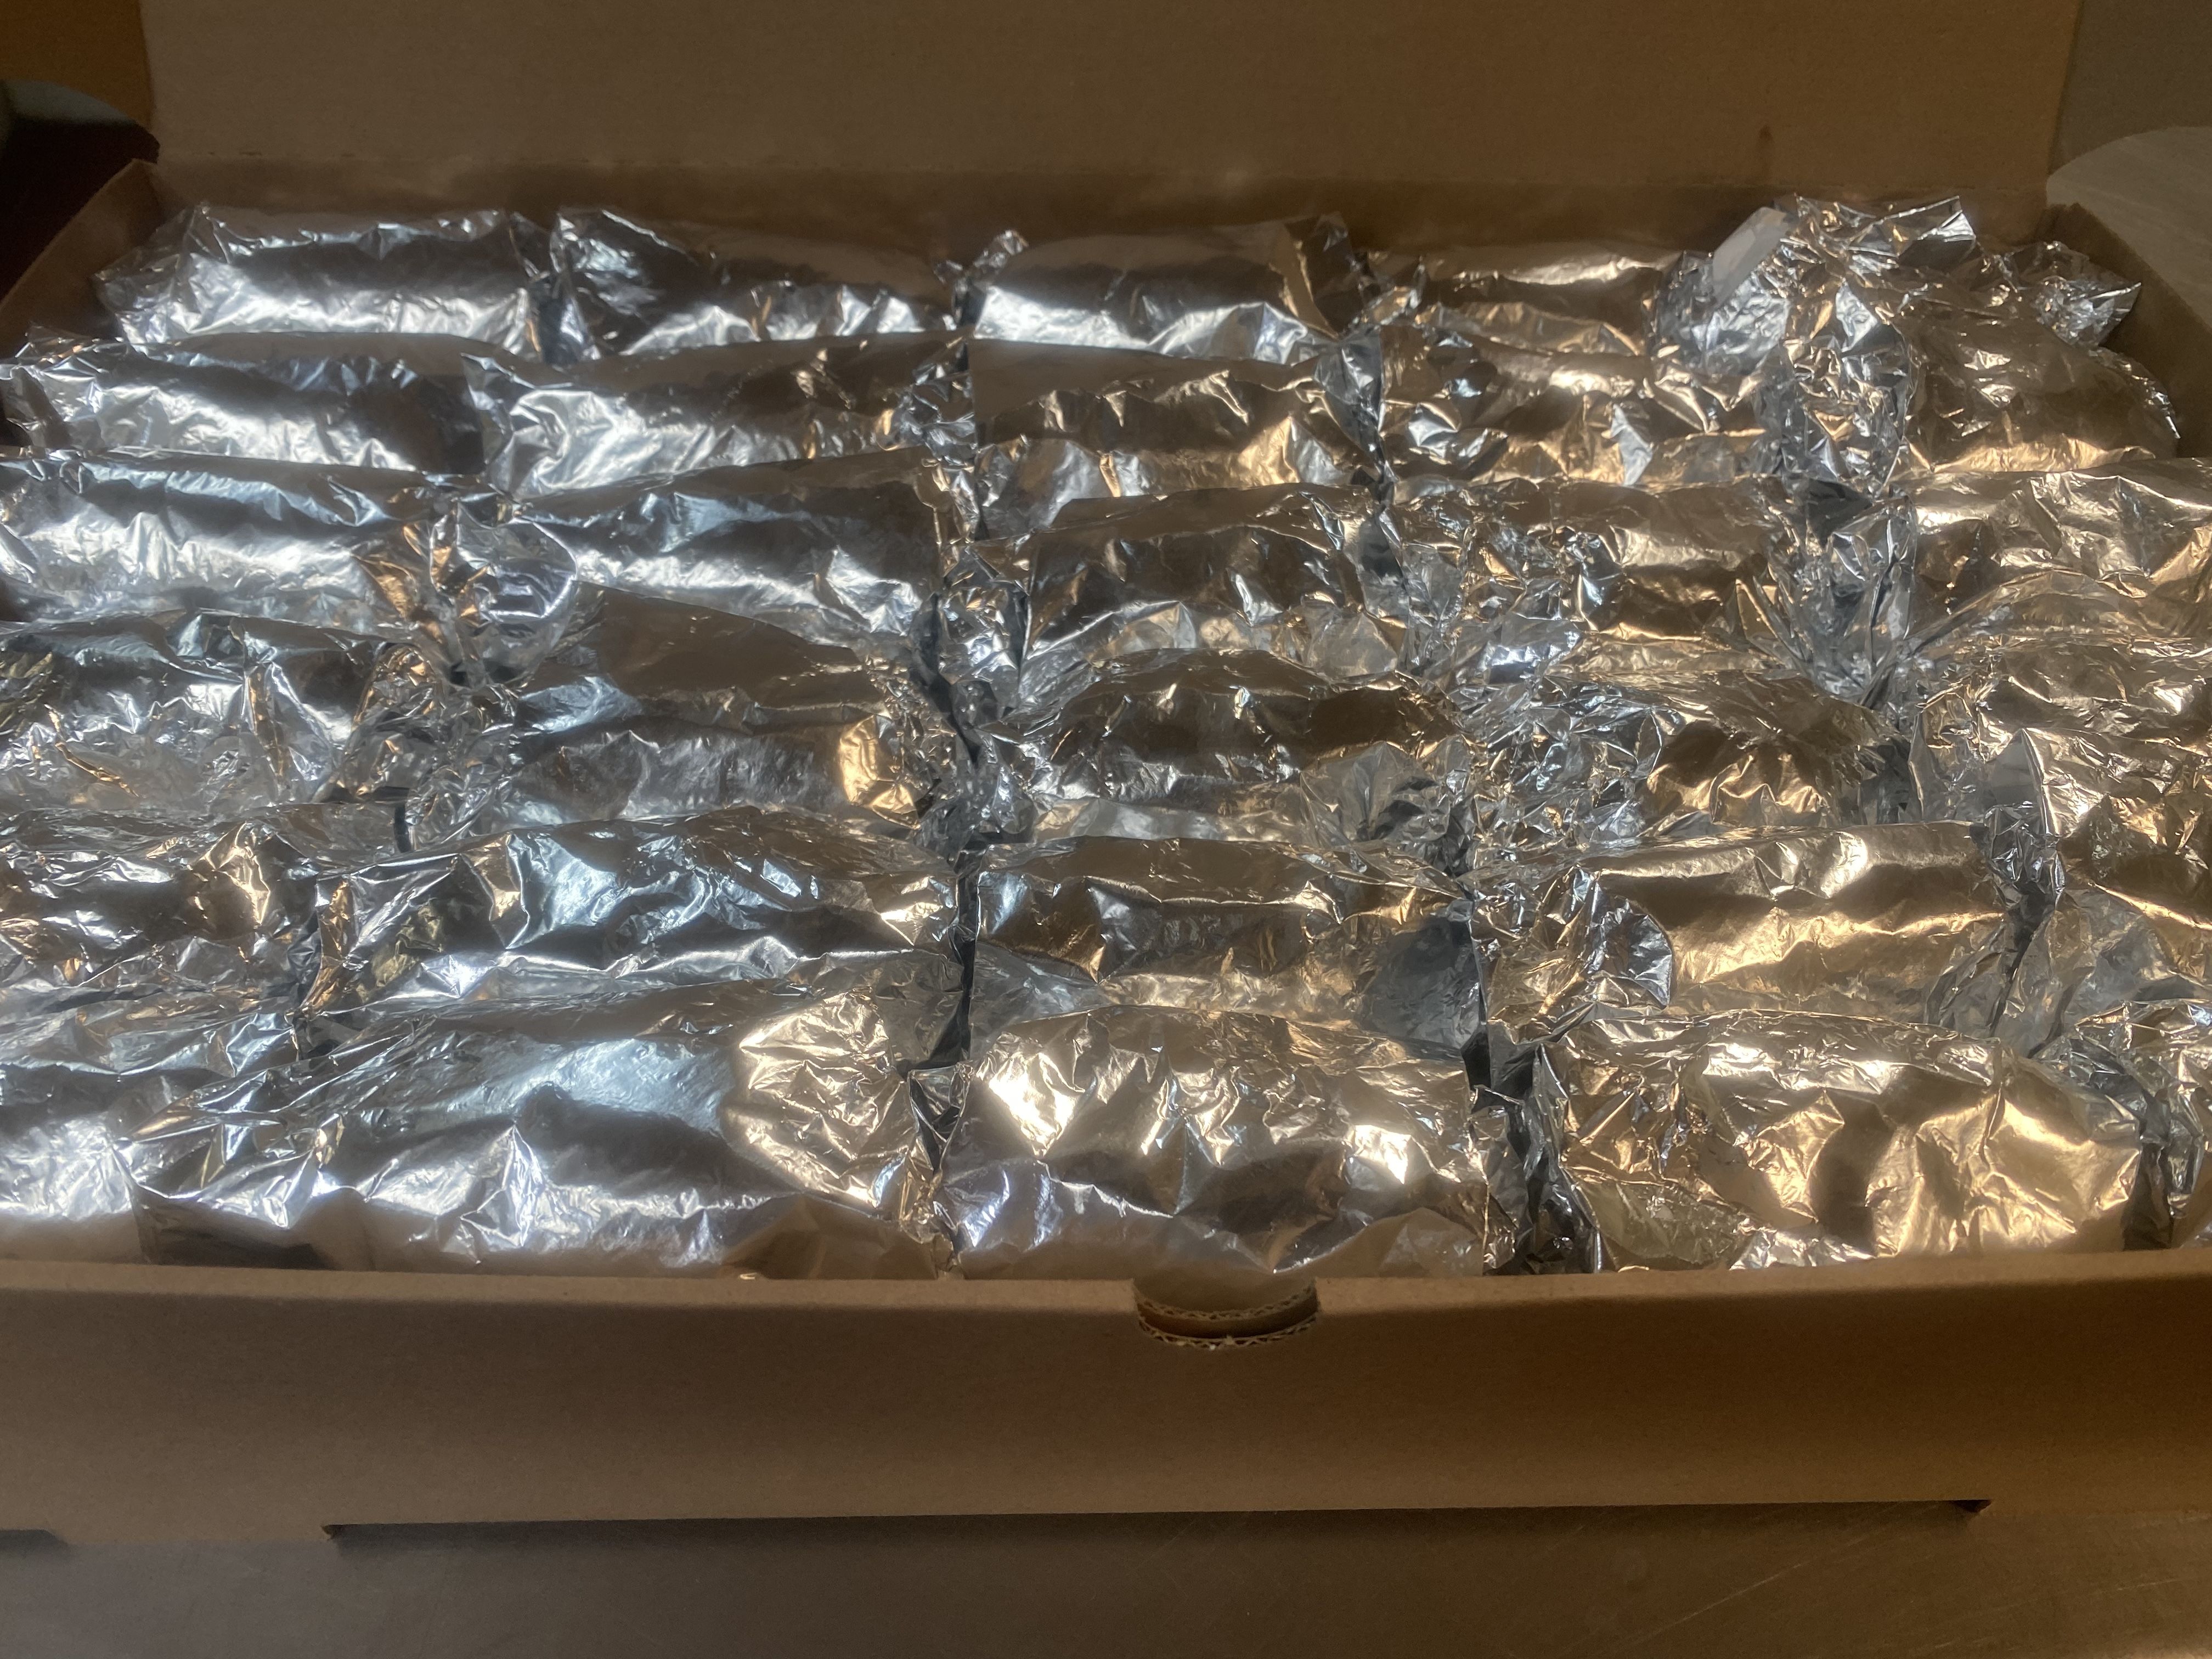 Brisket Sandwiches (15 pack)